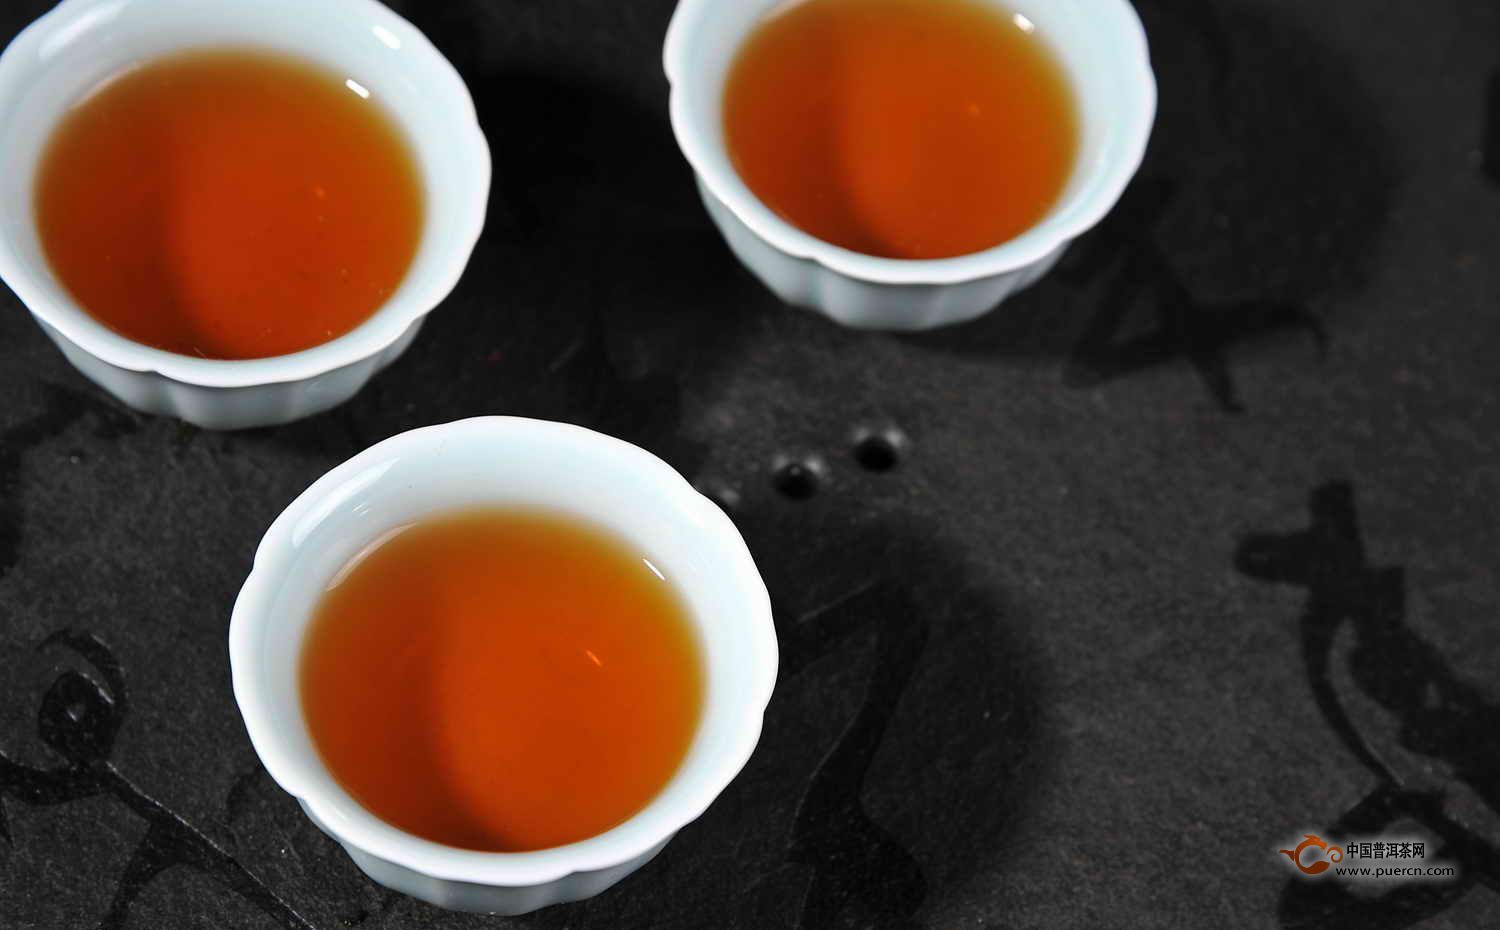 祁门红茶可以提供丰富的核黄素、叶酸、胡萝卜素、生育酚及叶绿,